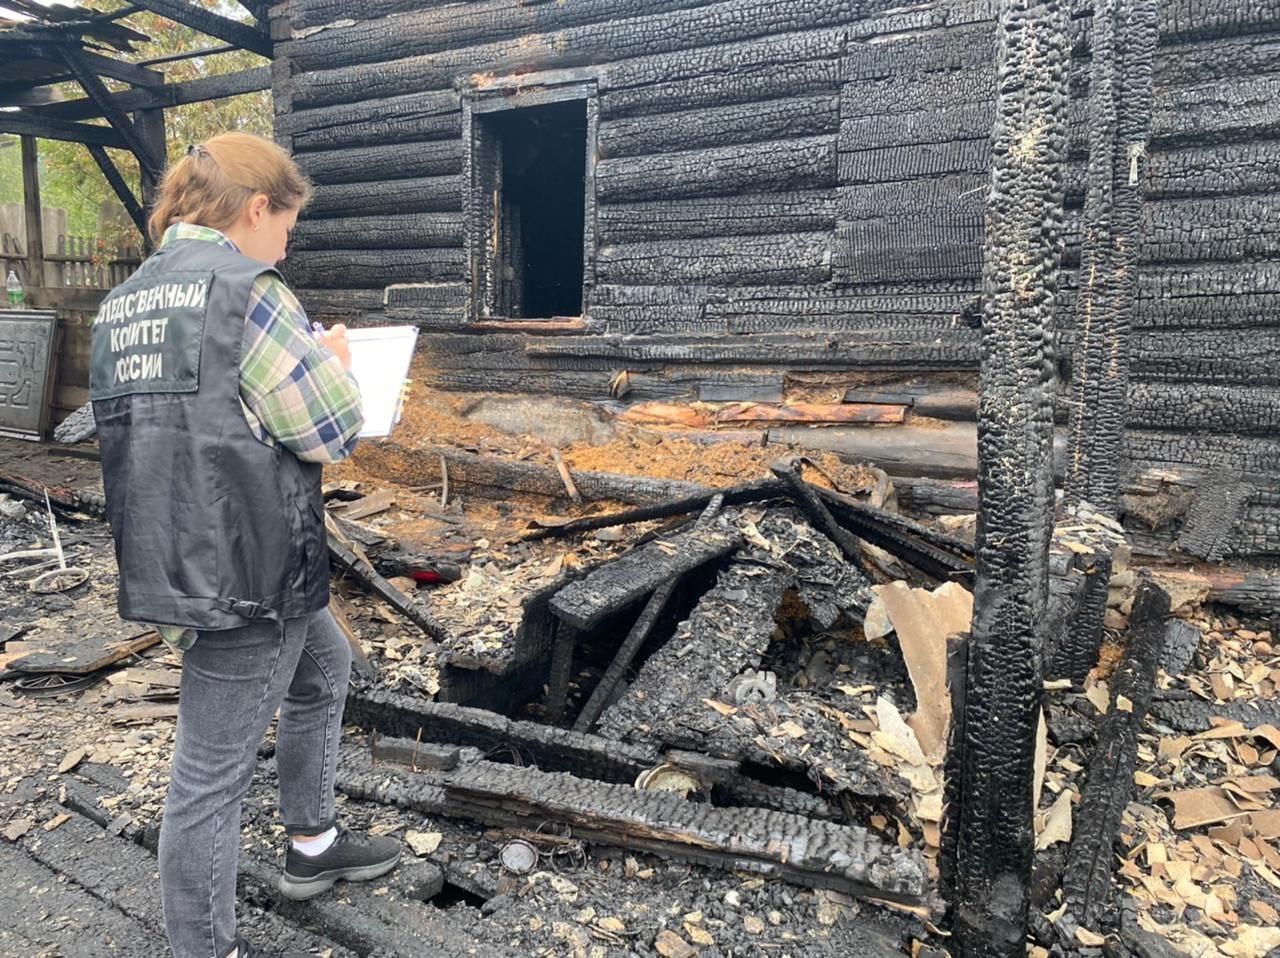 Семейная пара погибла на пожаре в Усть-Куте. Детей успели спасти